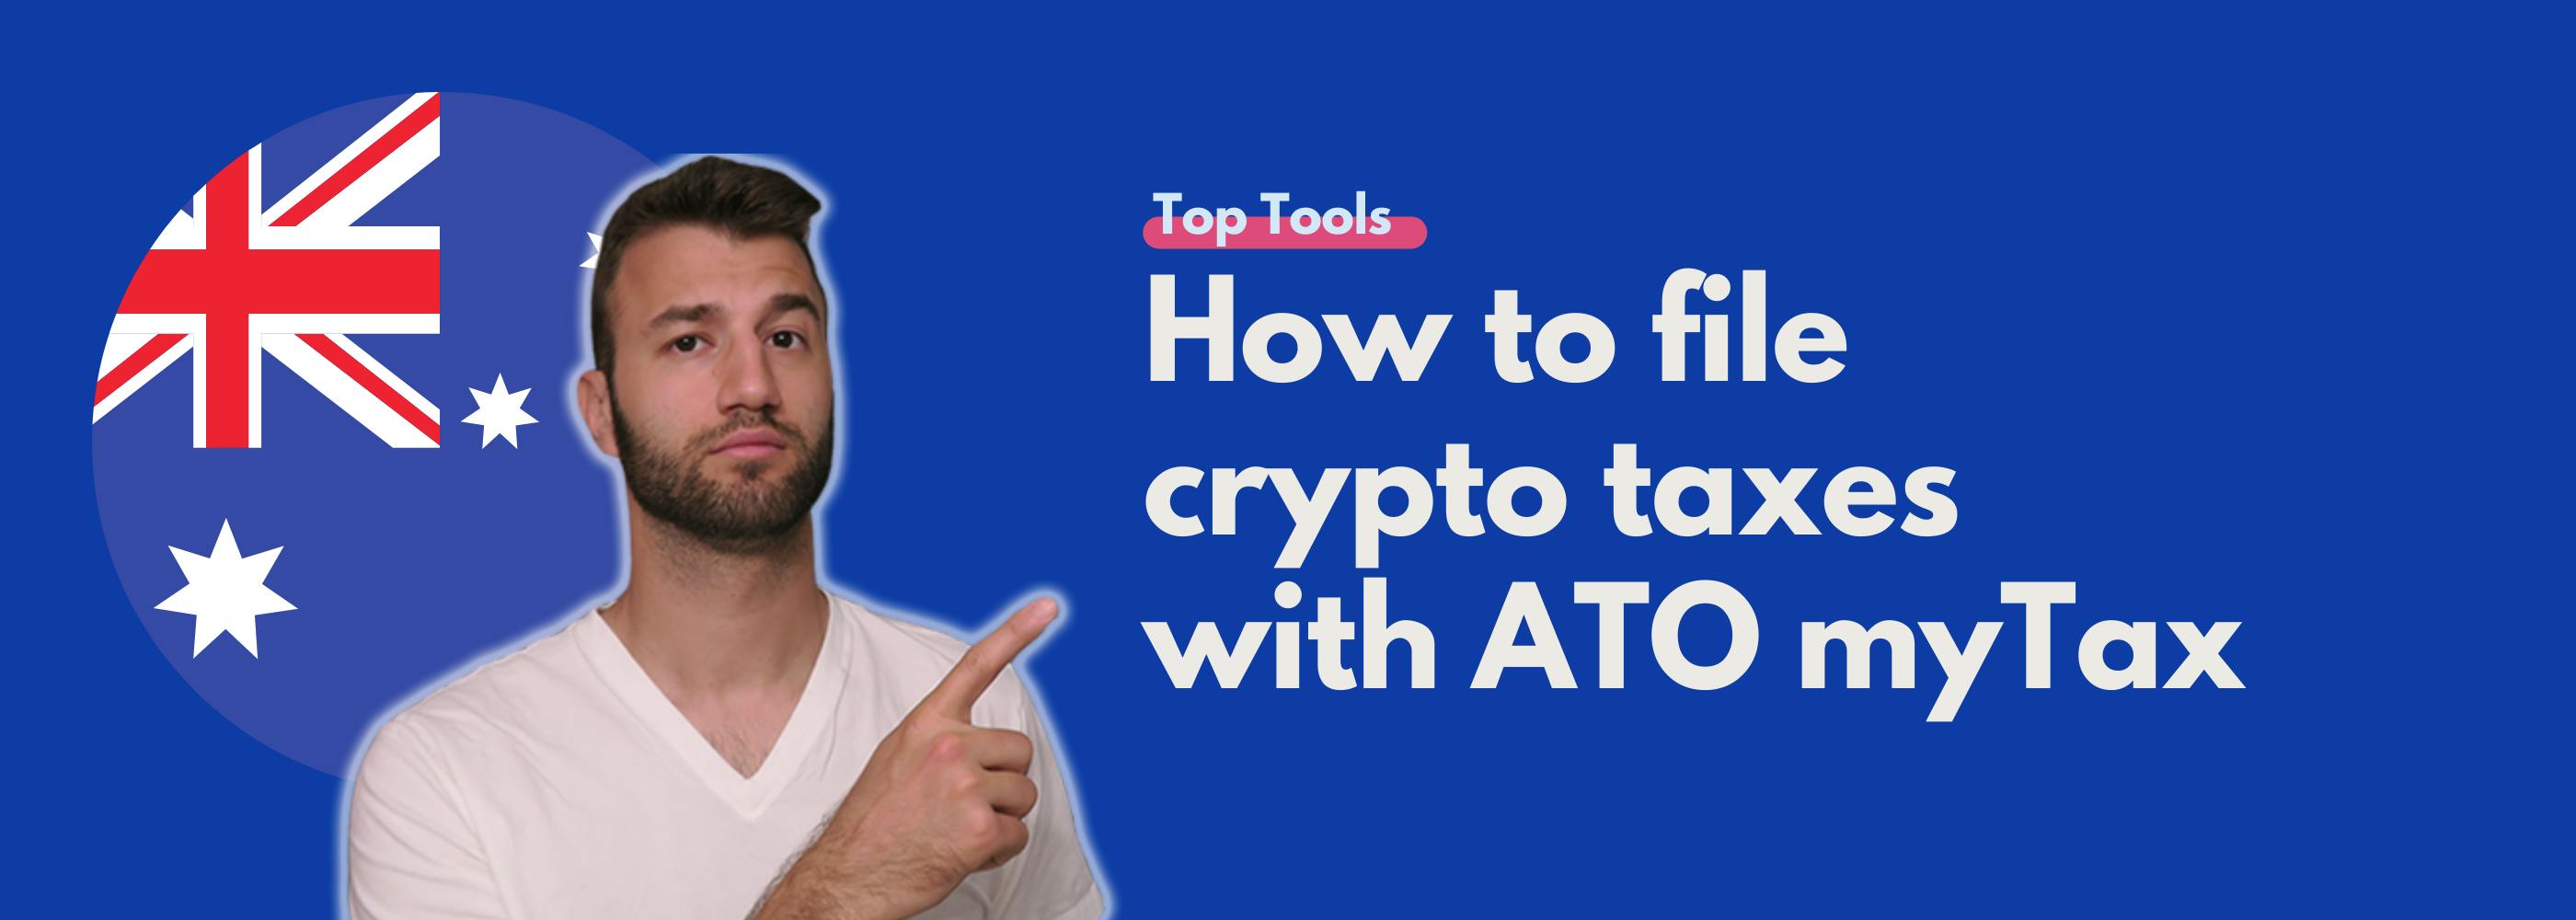 ATO myTax how to file crypto taxes